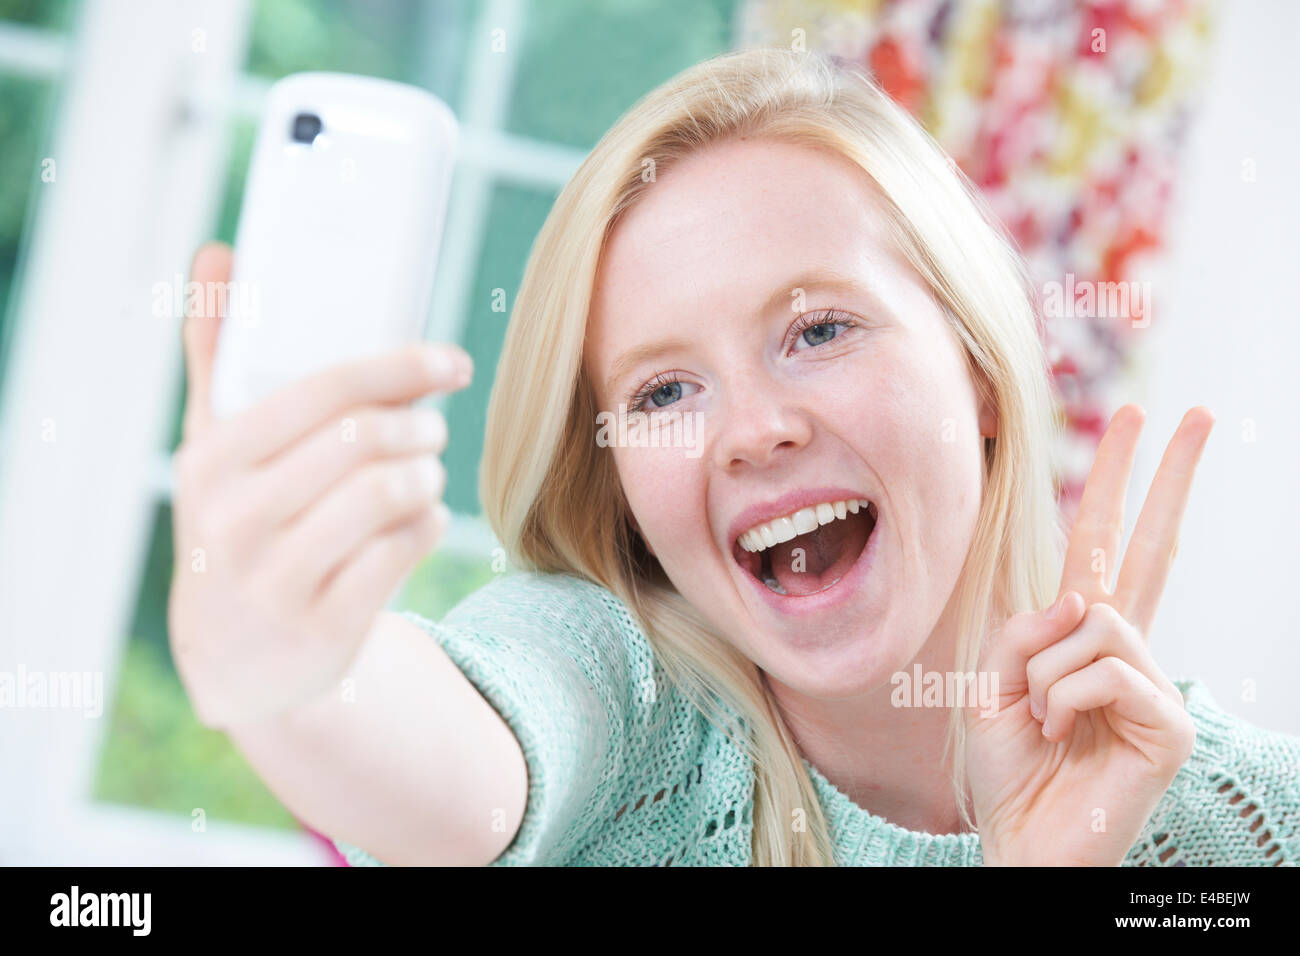 Teenager-Mädchen unter Selbstportrait auf Handy Stockfoto